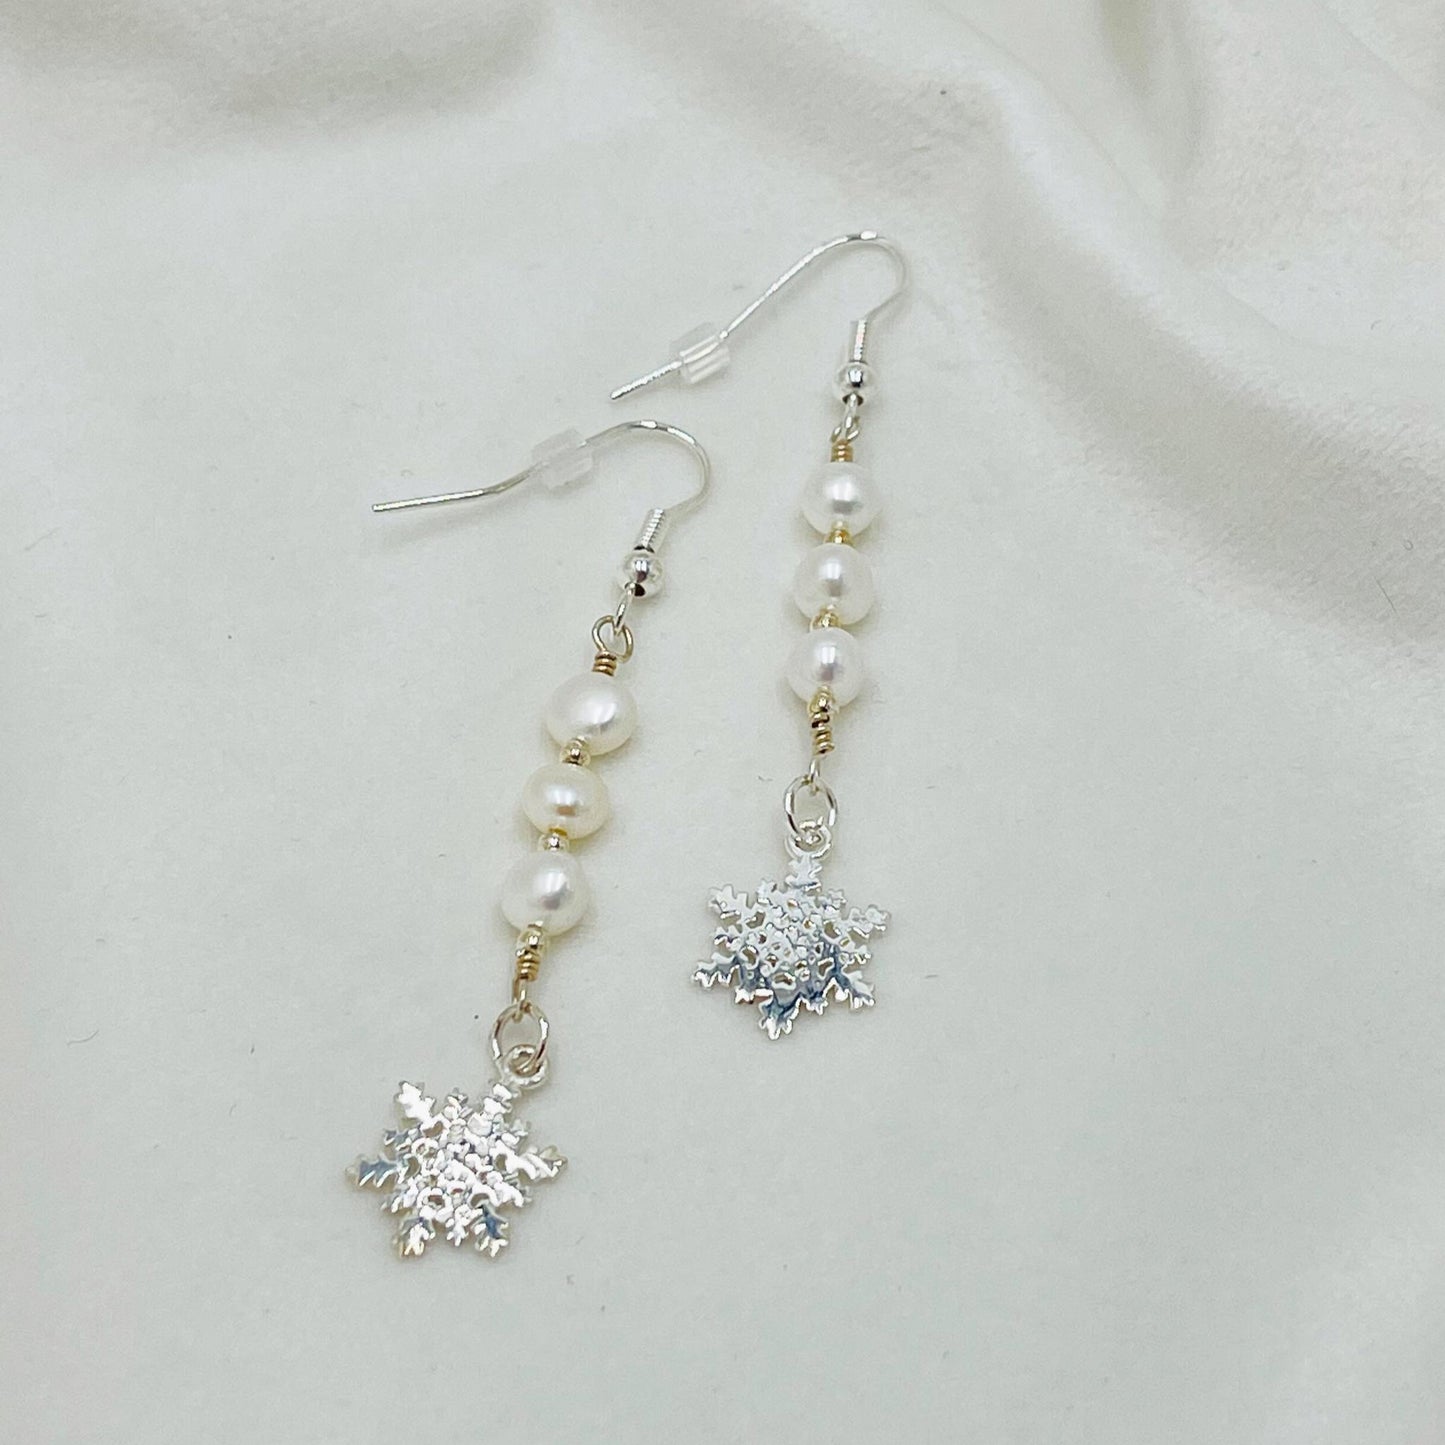 Snowflake Sterling Earrings-Sterling Silver Drop Earrings-Freshwater Pearl Earrings-Carabella By Cheryl